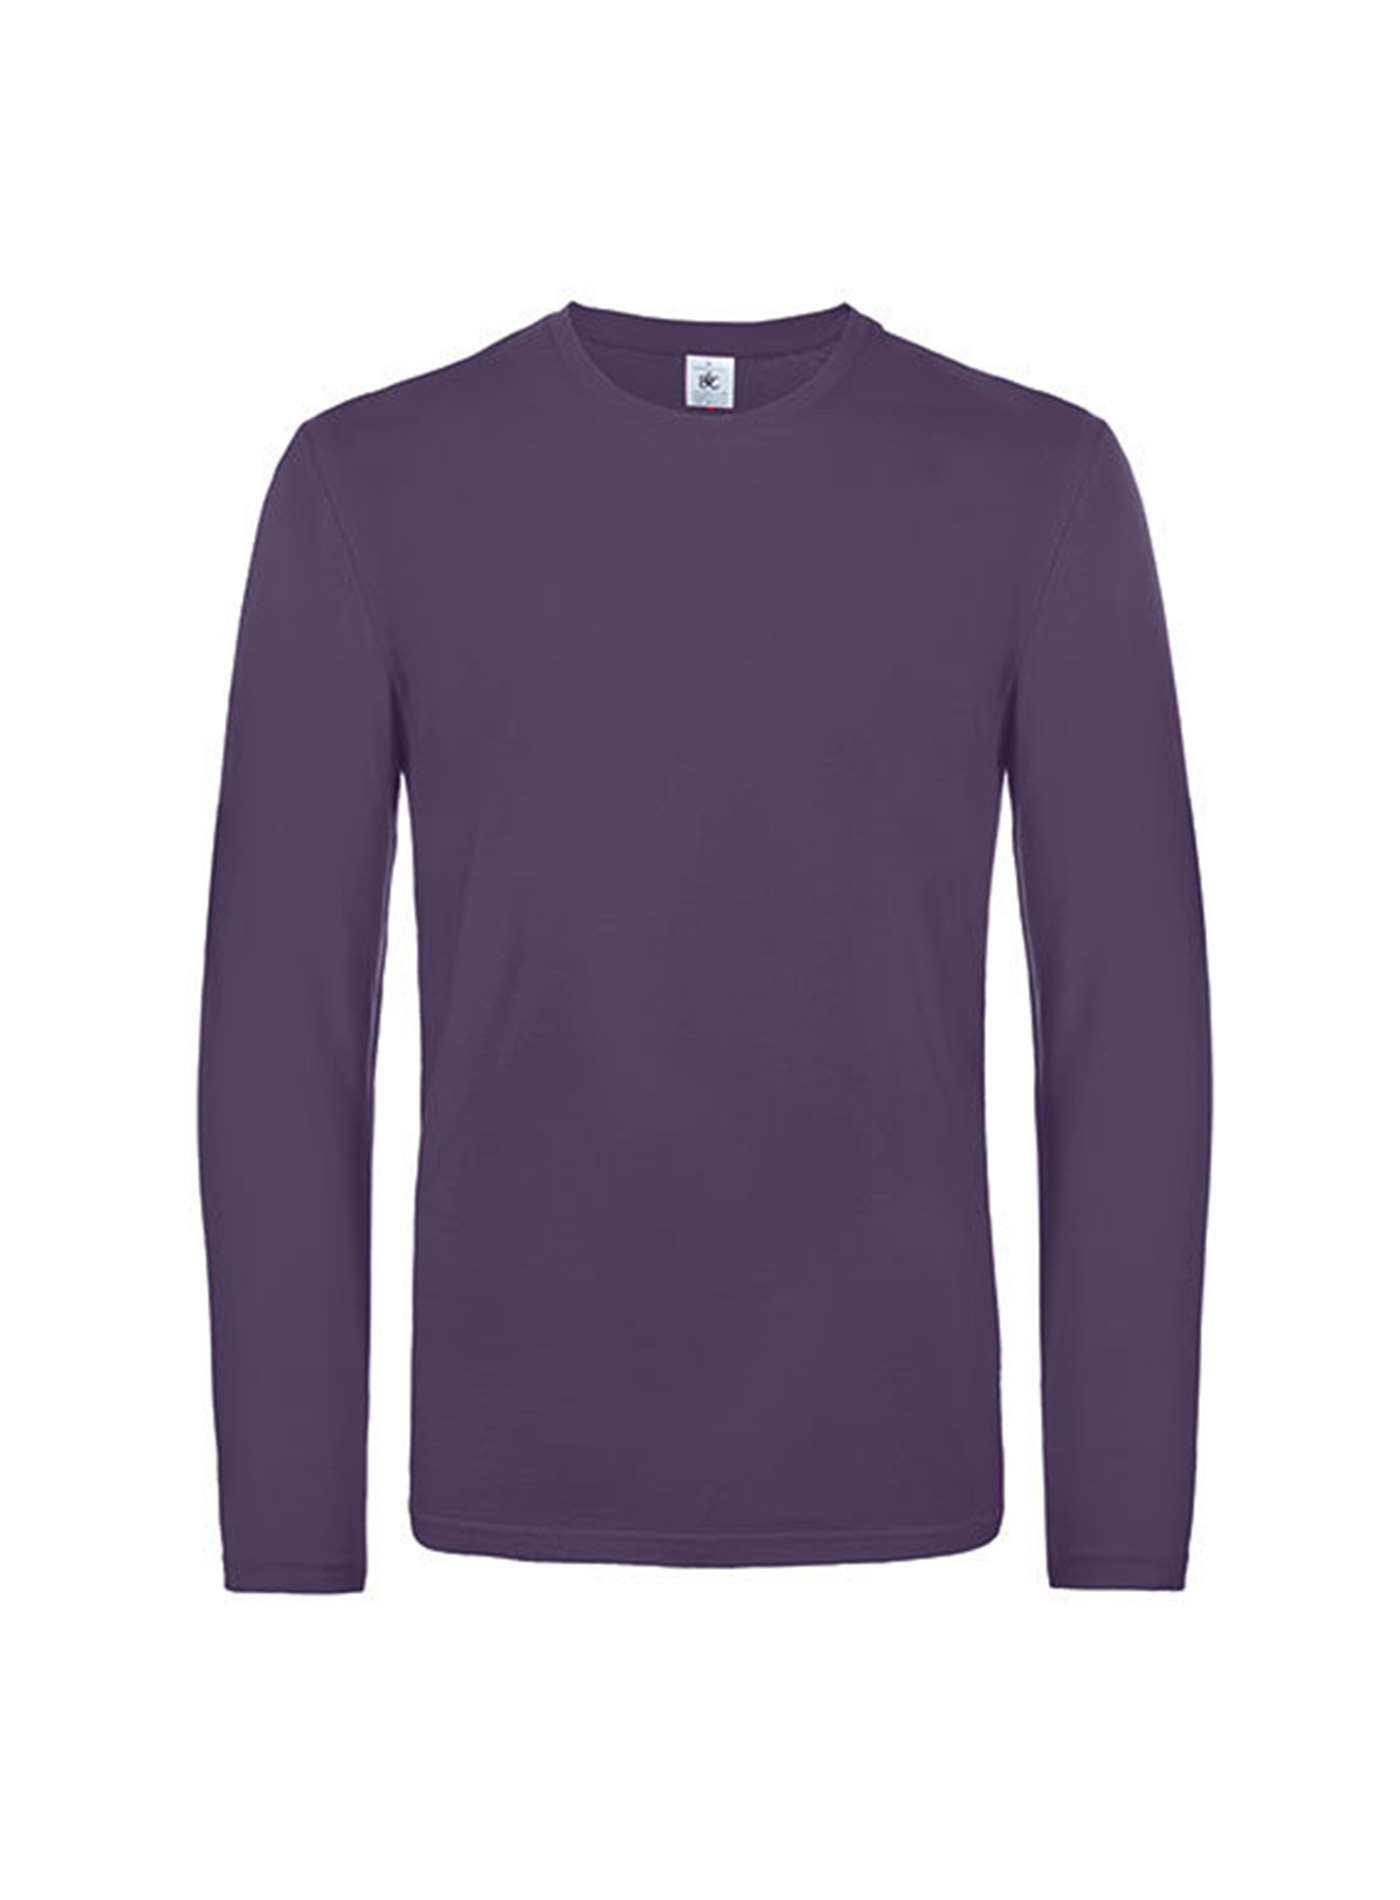 Pánské tričko s dlouhým rukávem B&C Collection - Tmavě fialová 3XL